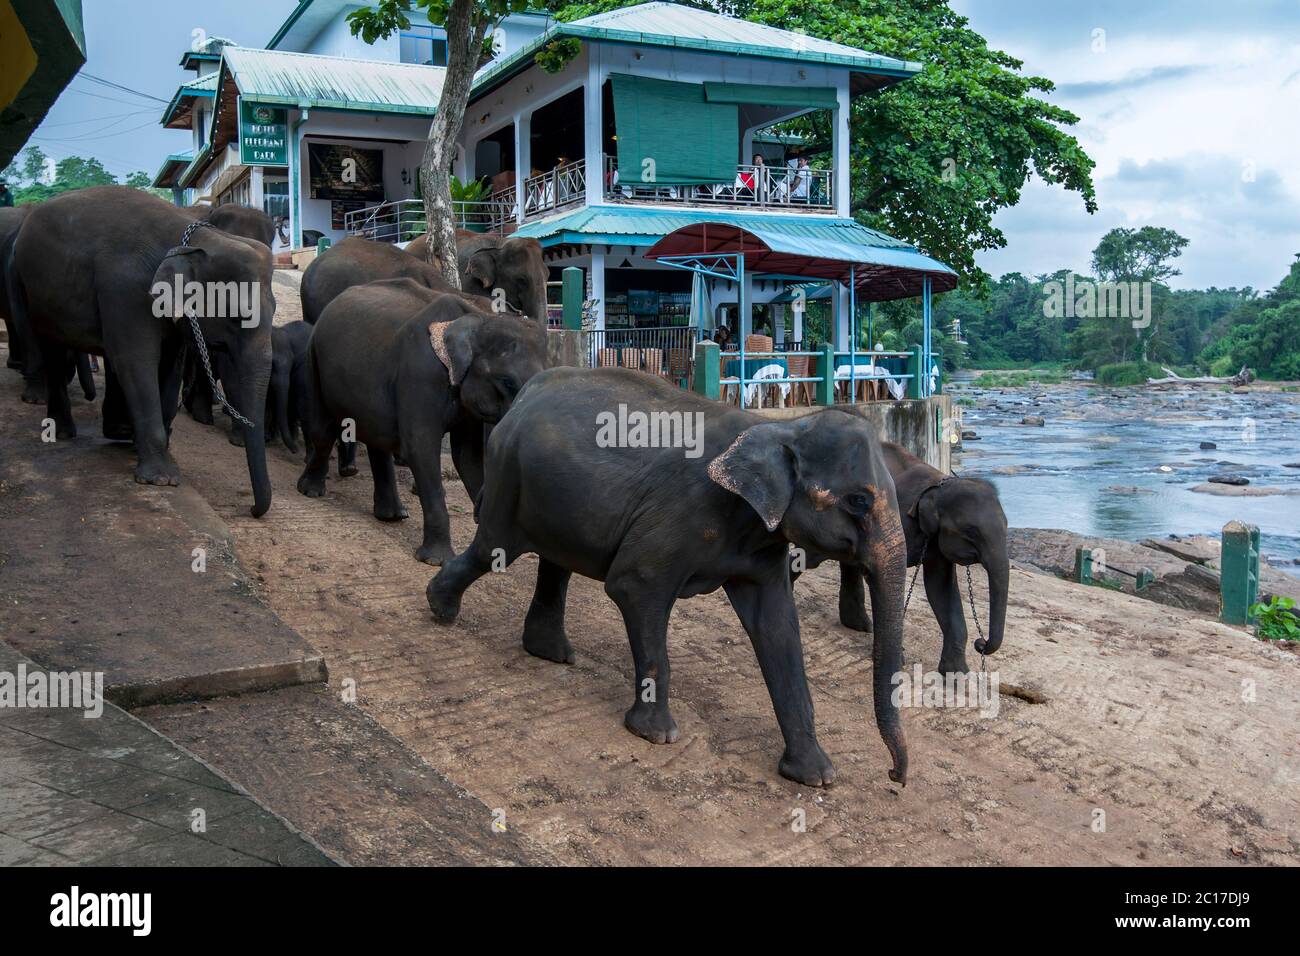 Elephants from the Pinnawala Elephant Orphanage in central Sri Lanka head towards the Maha Oya river in central Sri Lanka to bathe. Stock Photo